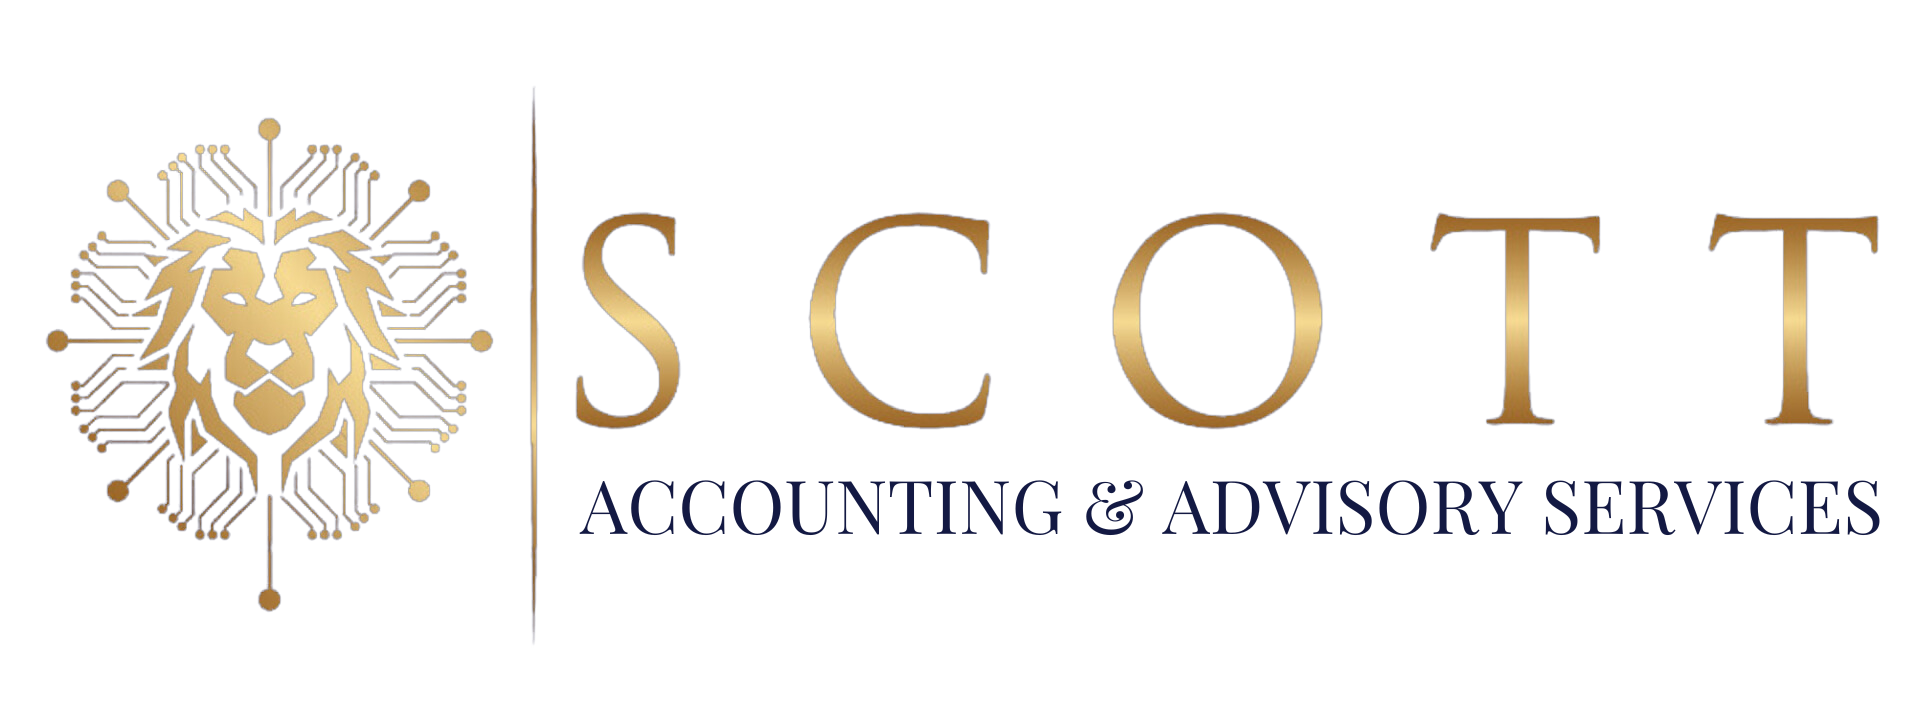 Scott Accounting